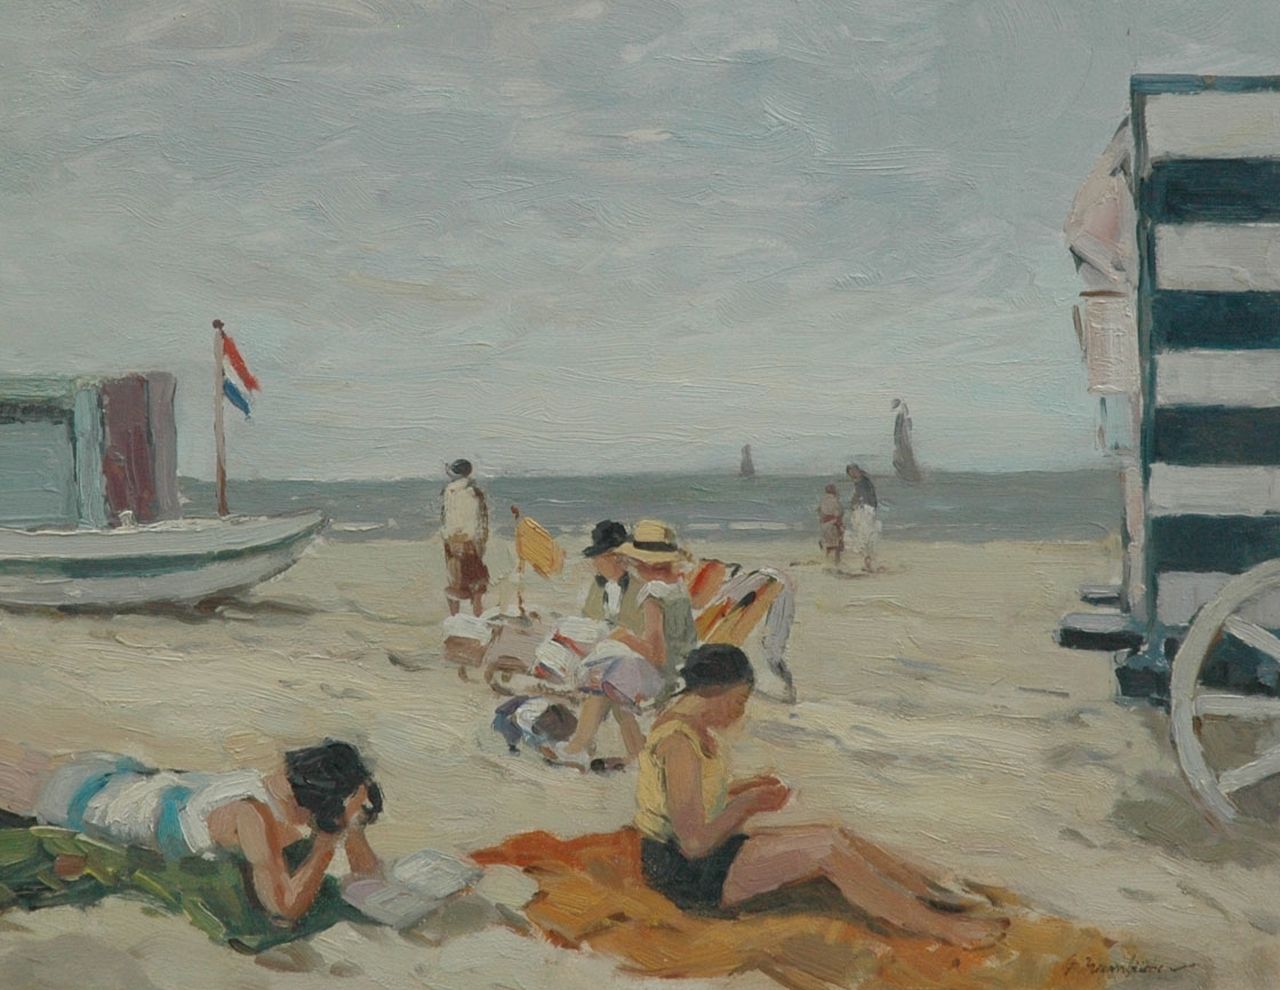 Hambüchen G.  | Georg Hambüchen, At the beach, oil on panel 36.0 x 45.5 cm, signed l.r.